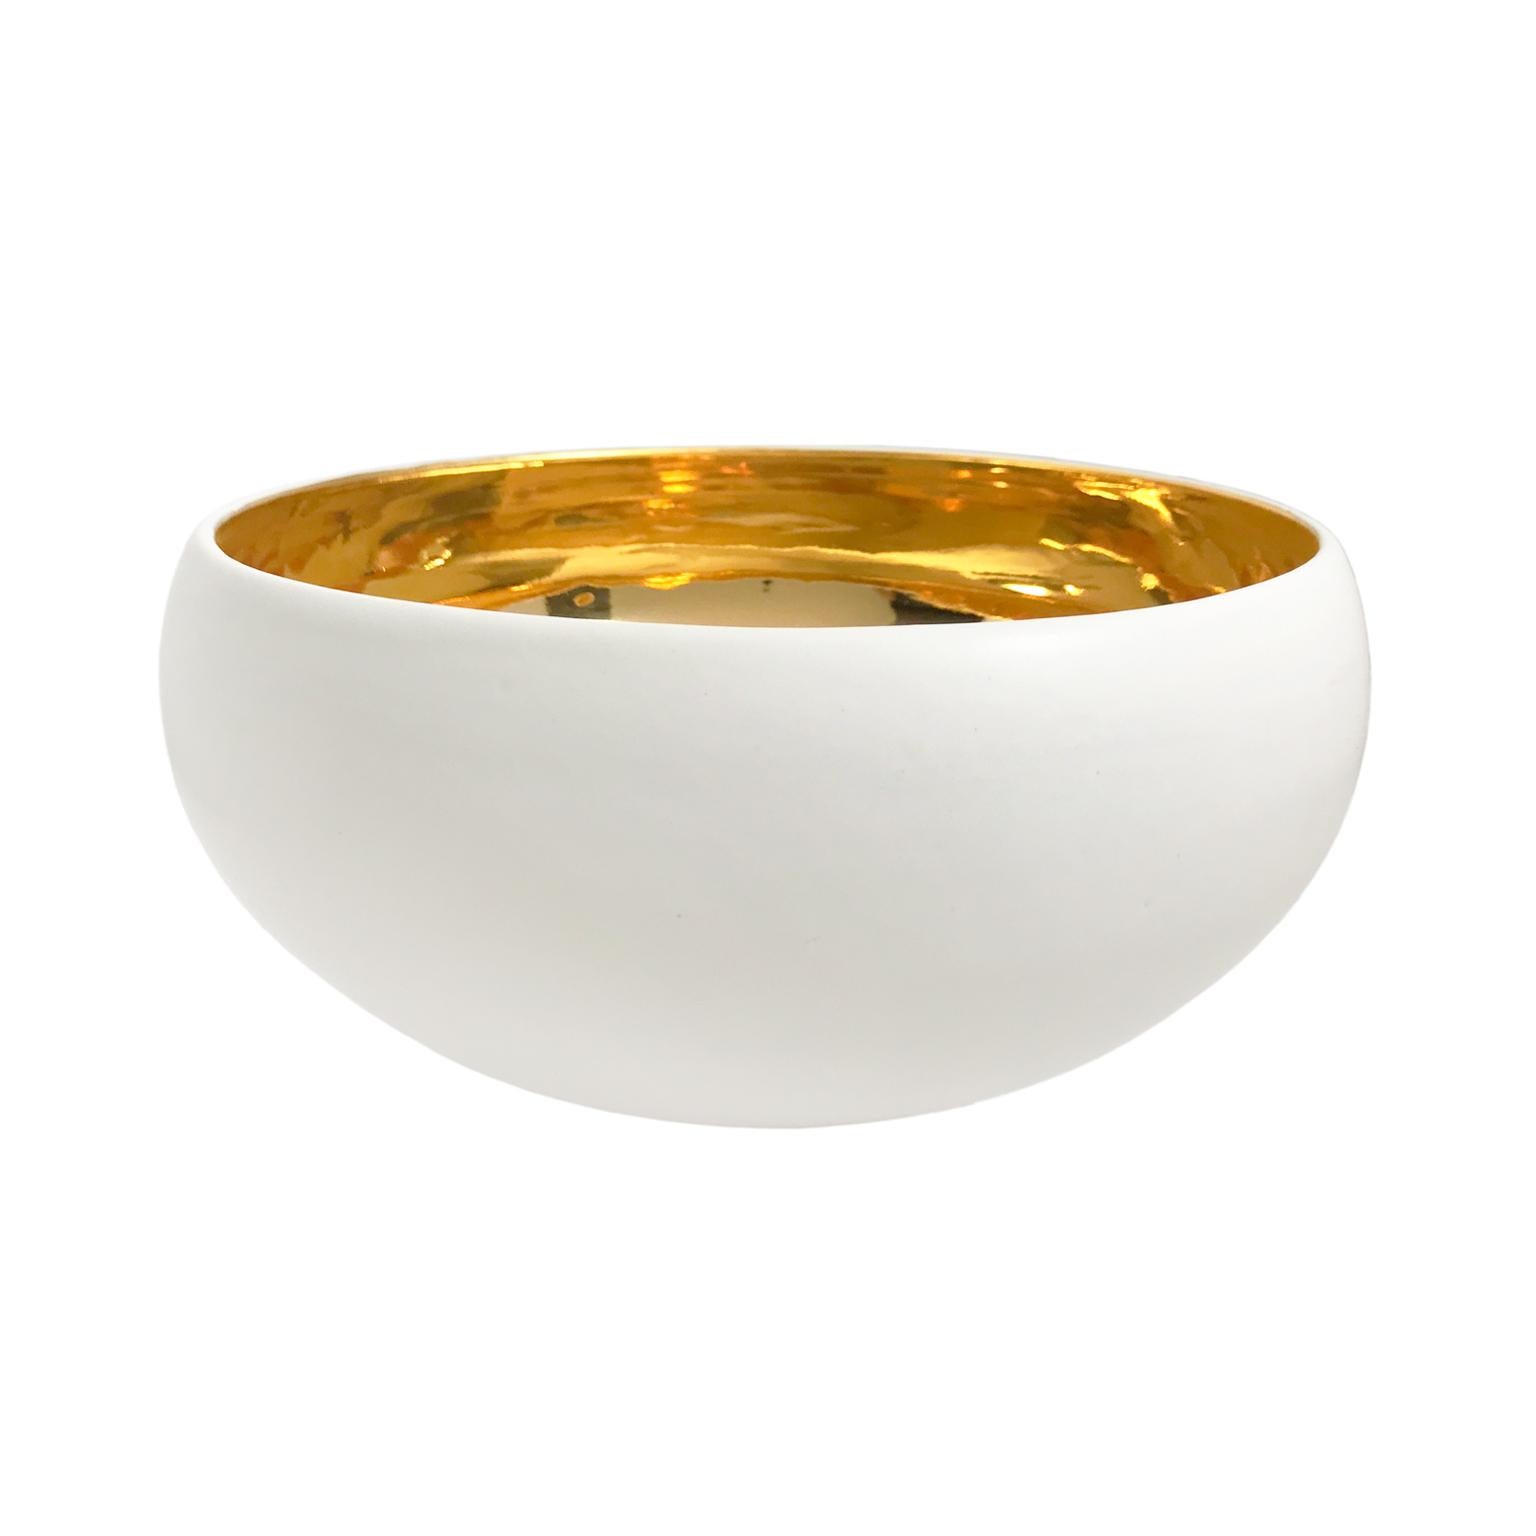 Large Alabaster and 22-Karat Gold Glaze Curved Ceramic Bowl by Sandi Fellman For Sale